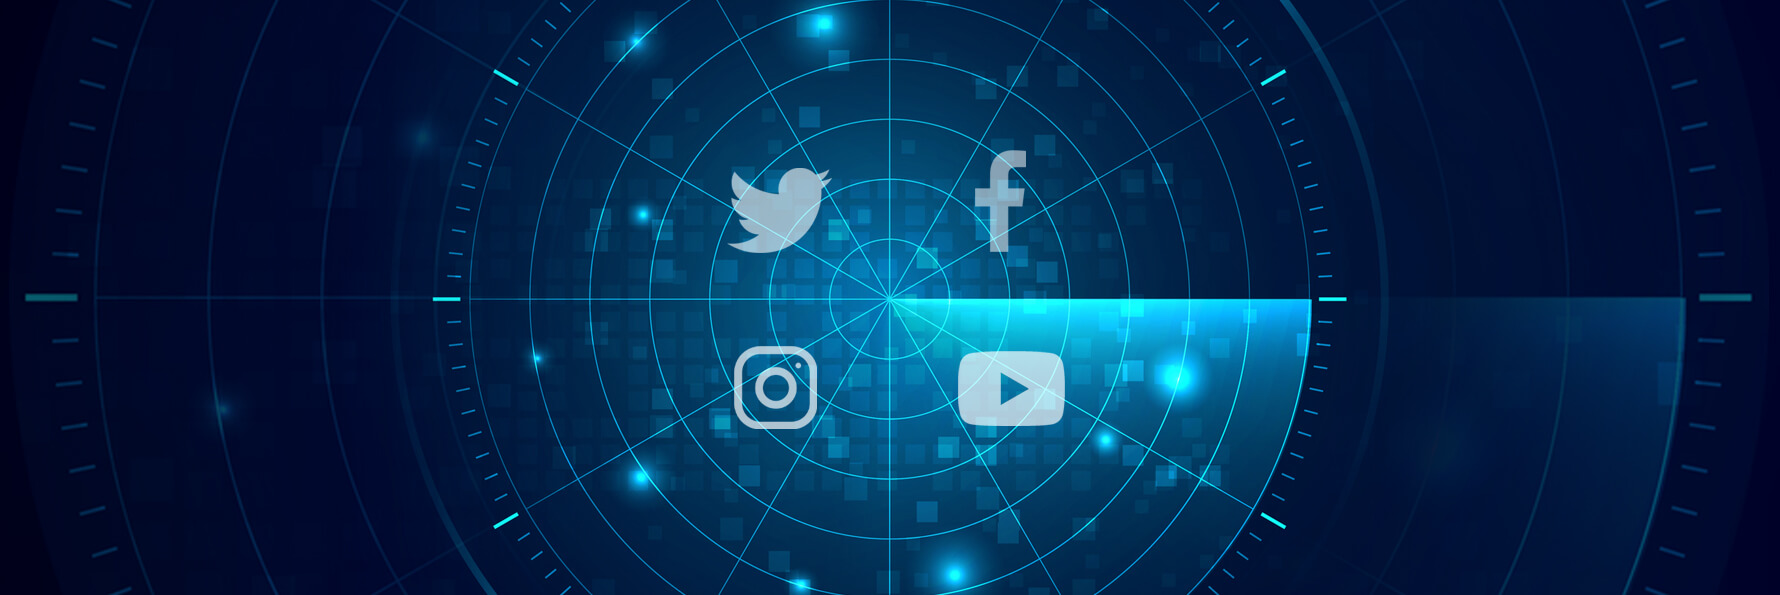 Das Bild zeigt einen Radar, auf dem verschiedene Icons der Social-Media-Plattformen wie Twitter, facebook und Instagram eingebunden sind.